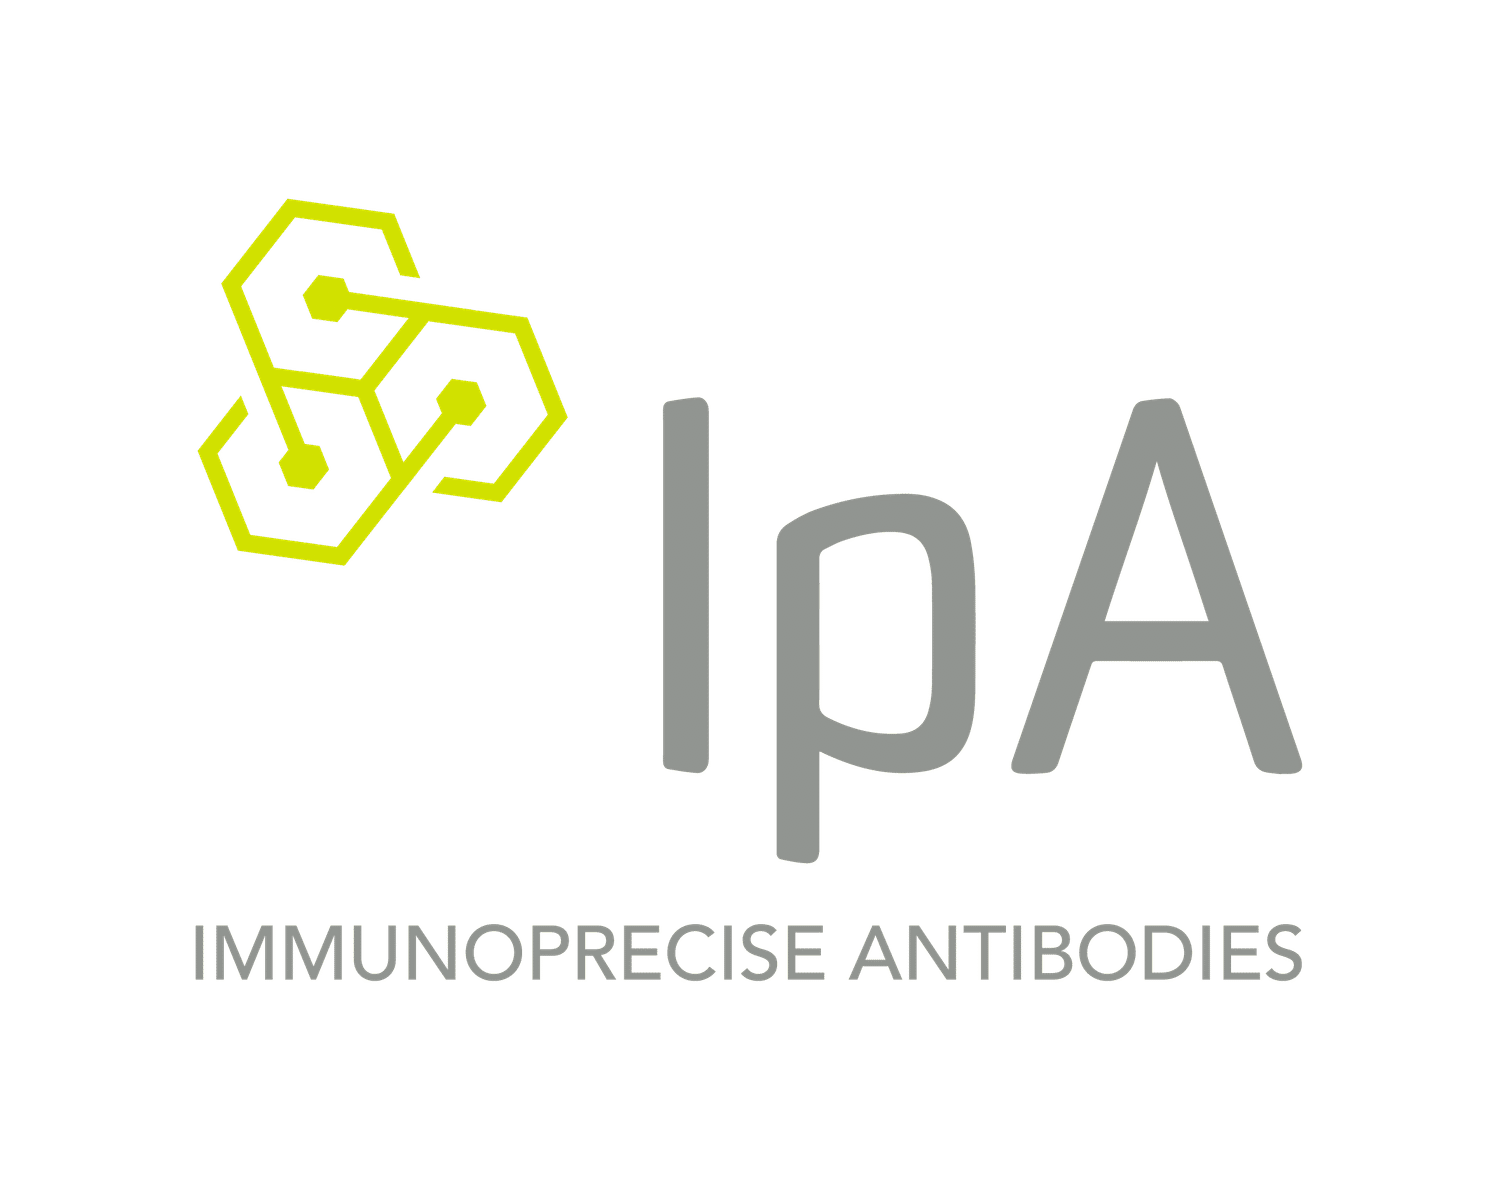 ImmunoPrecise Antibodies Ltd.